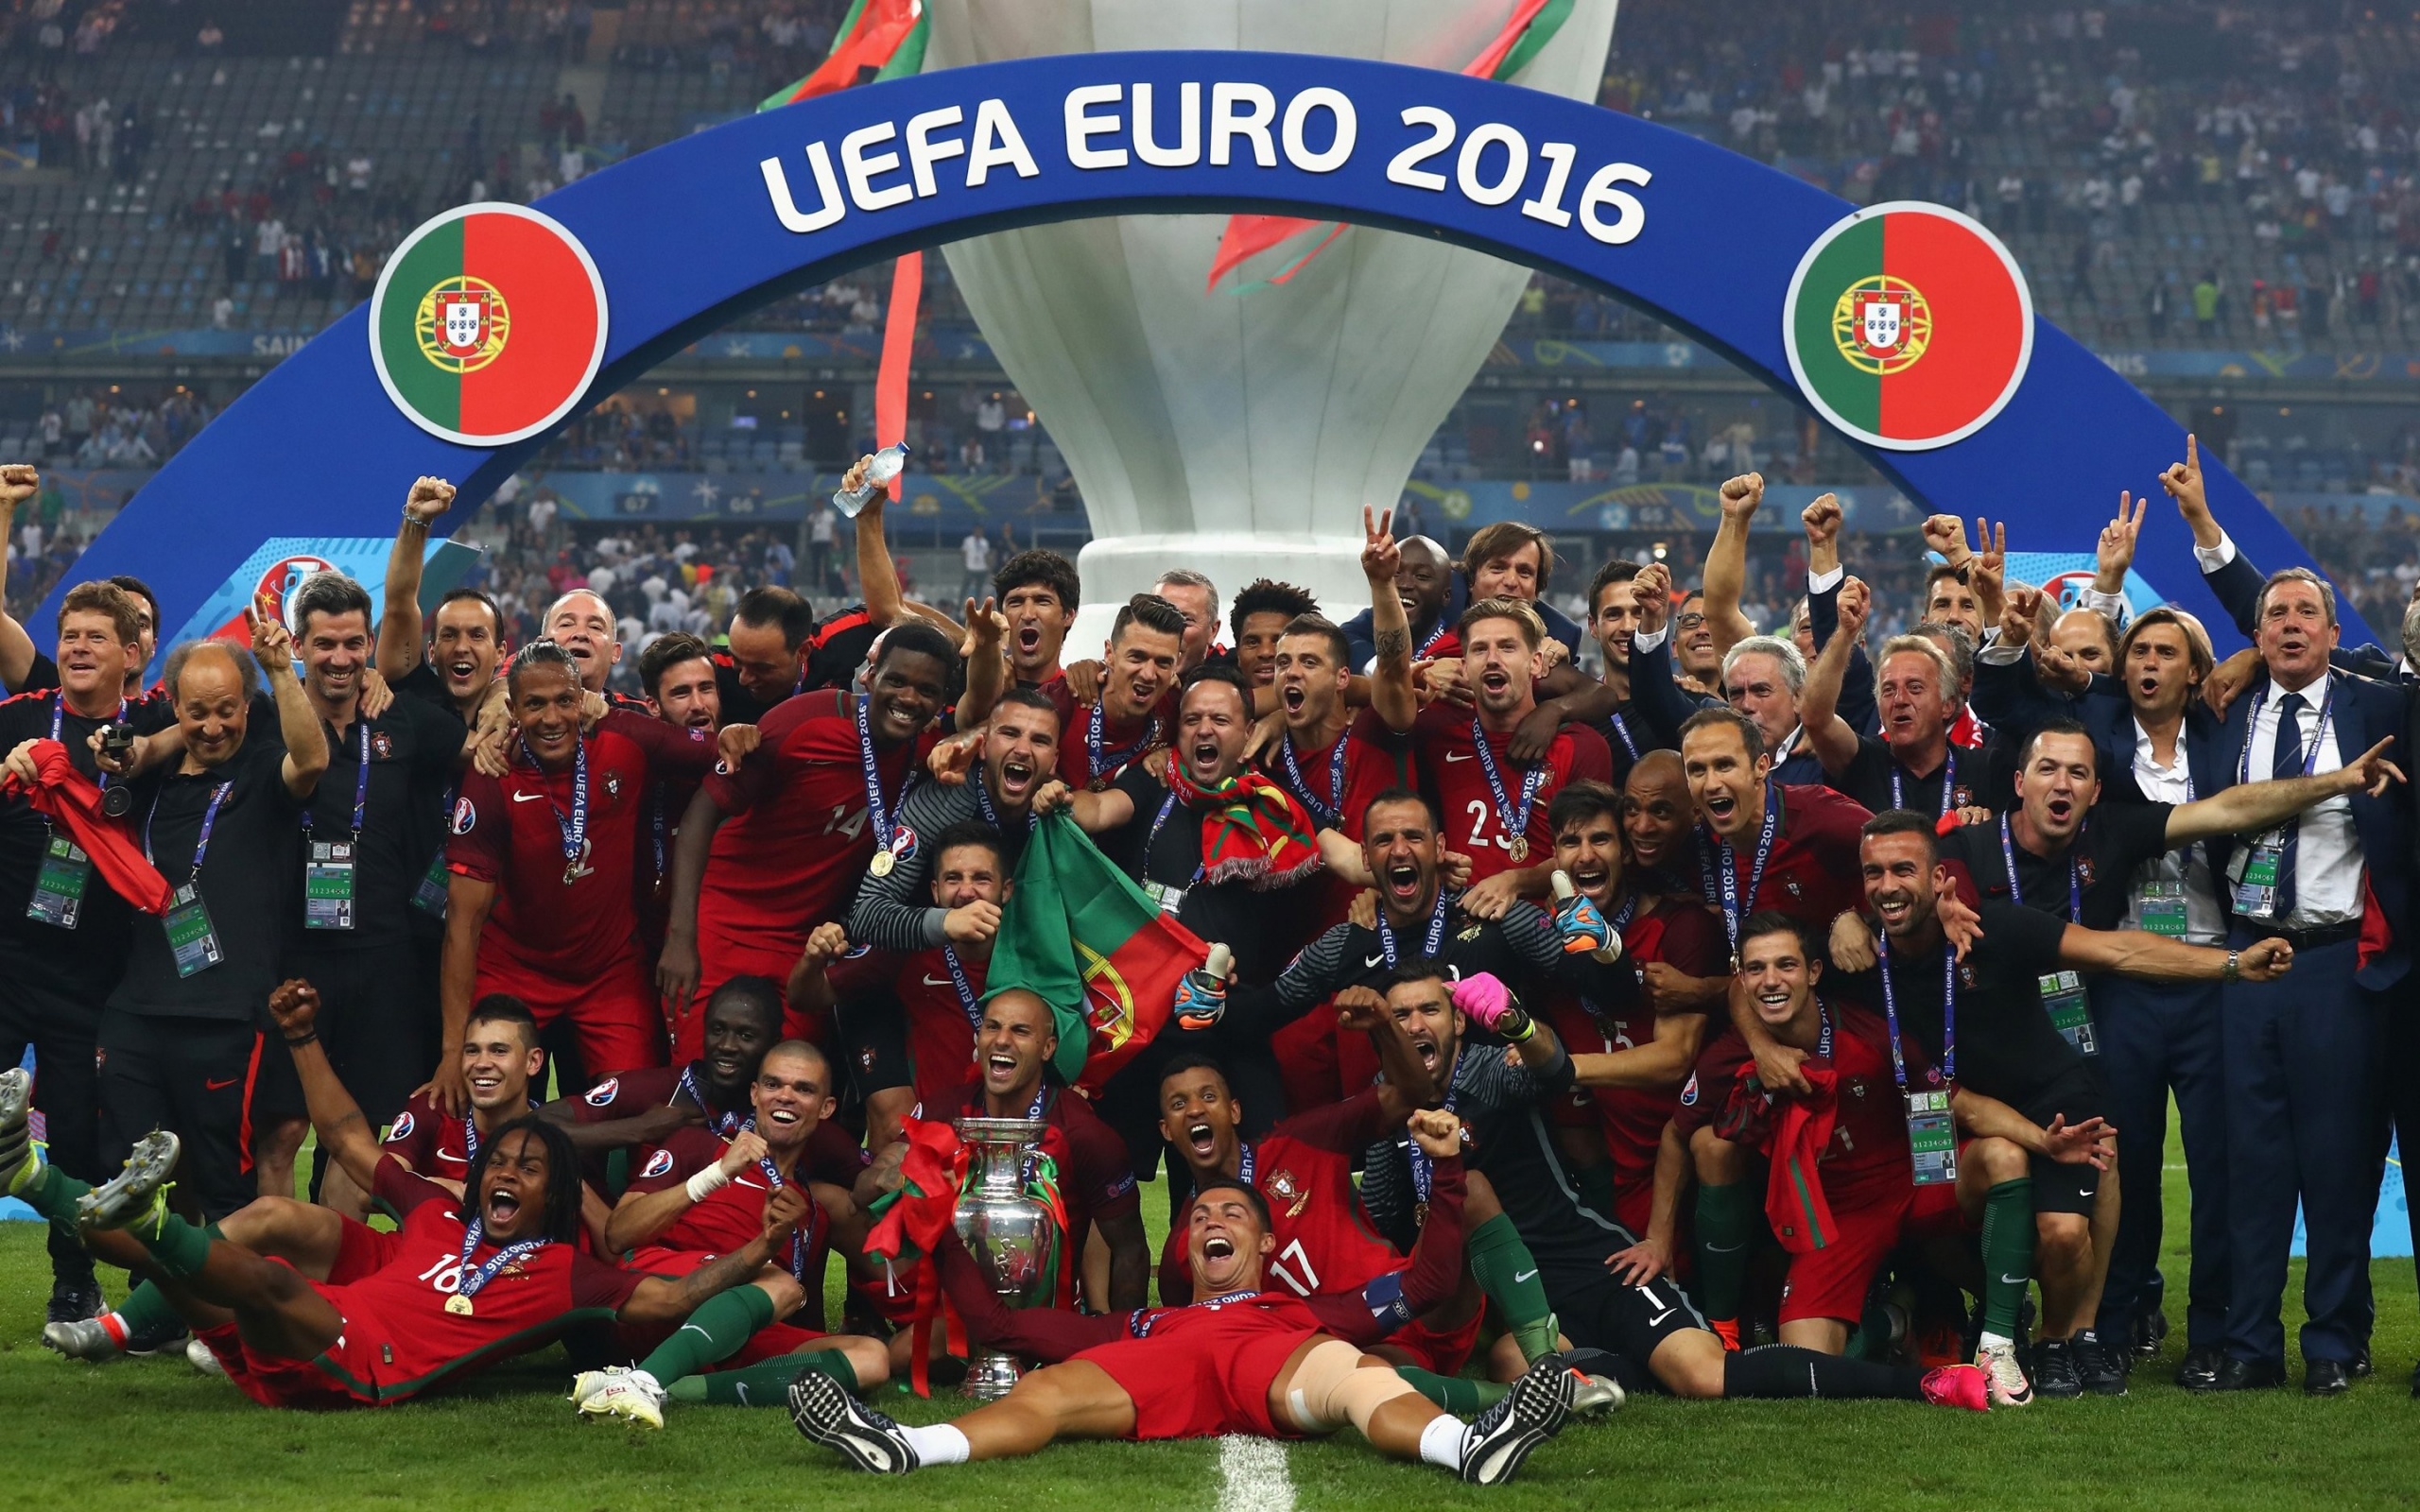 Сборная Португалии евро 2016. Португалия чемпион Европы 2016. Португалия победитель евро 2016. Португалия футбол евро 2016.